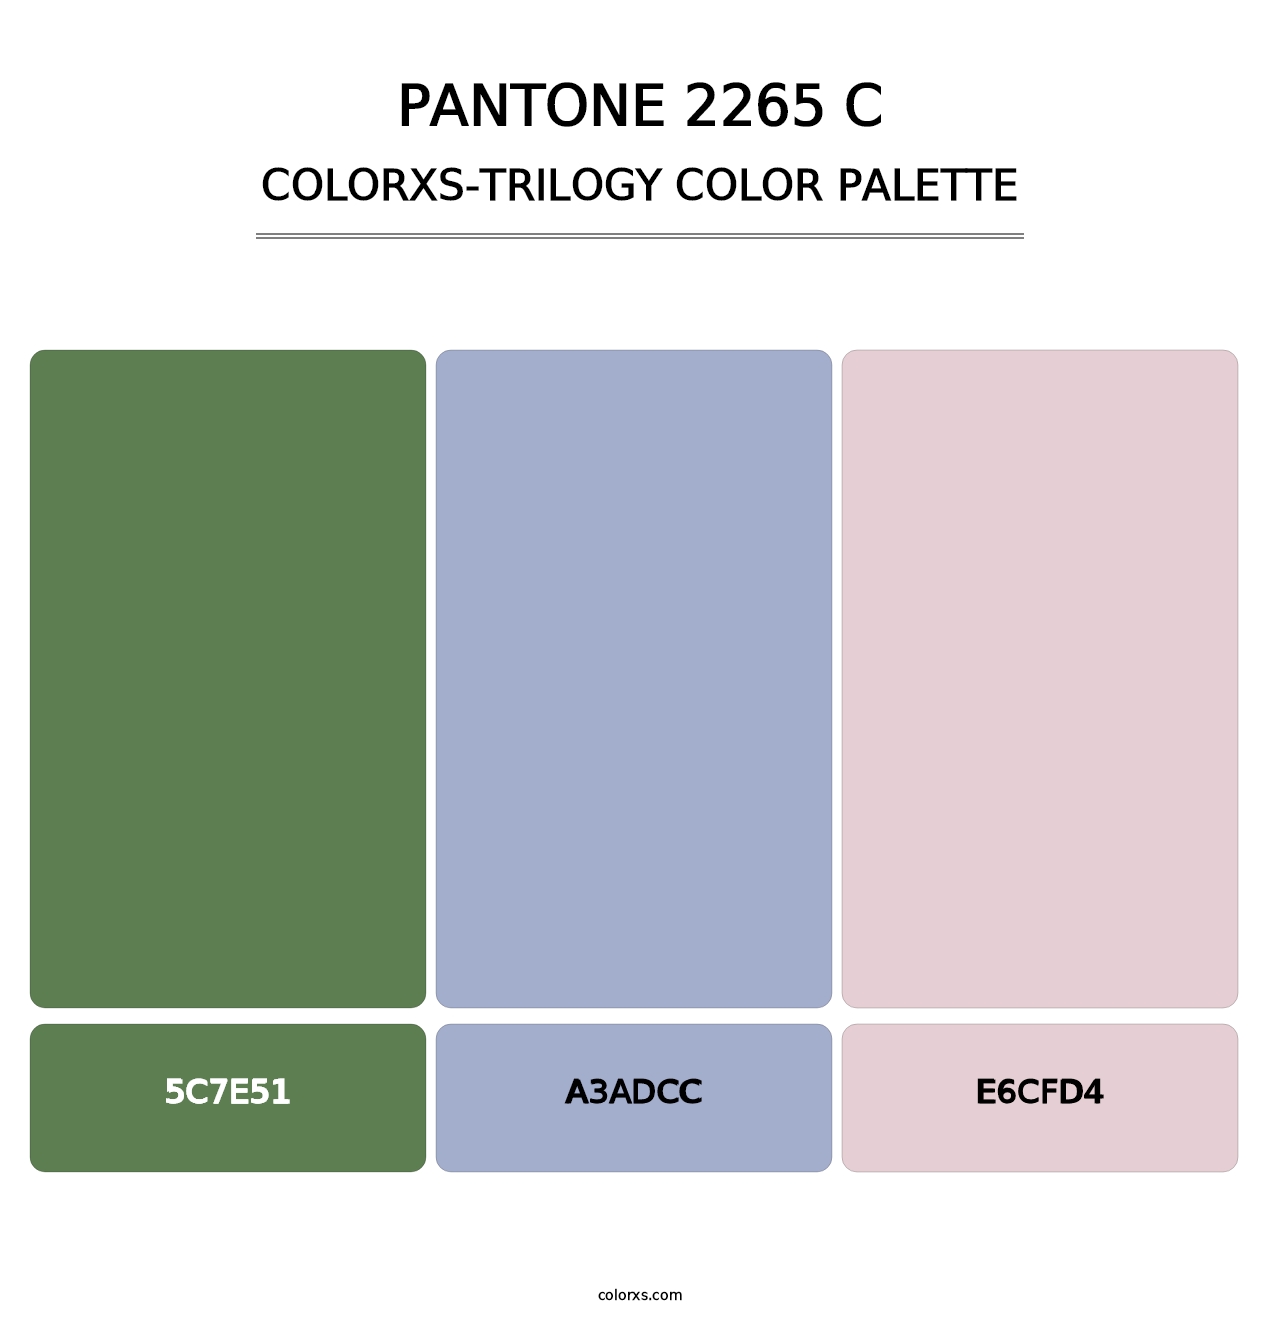 PANTONE 2265 C - Colorxs Trilogy Palette